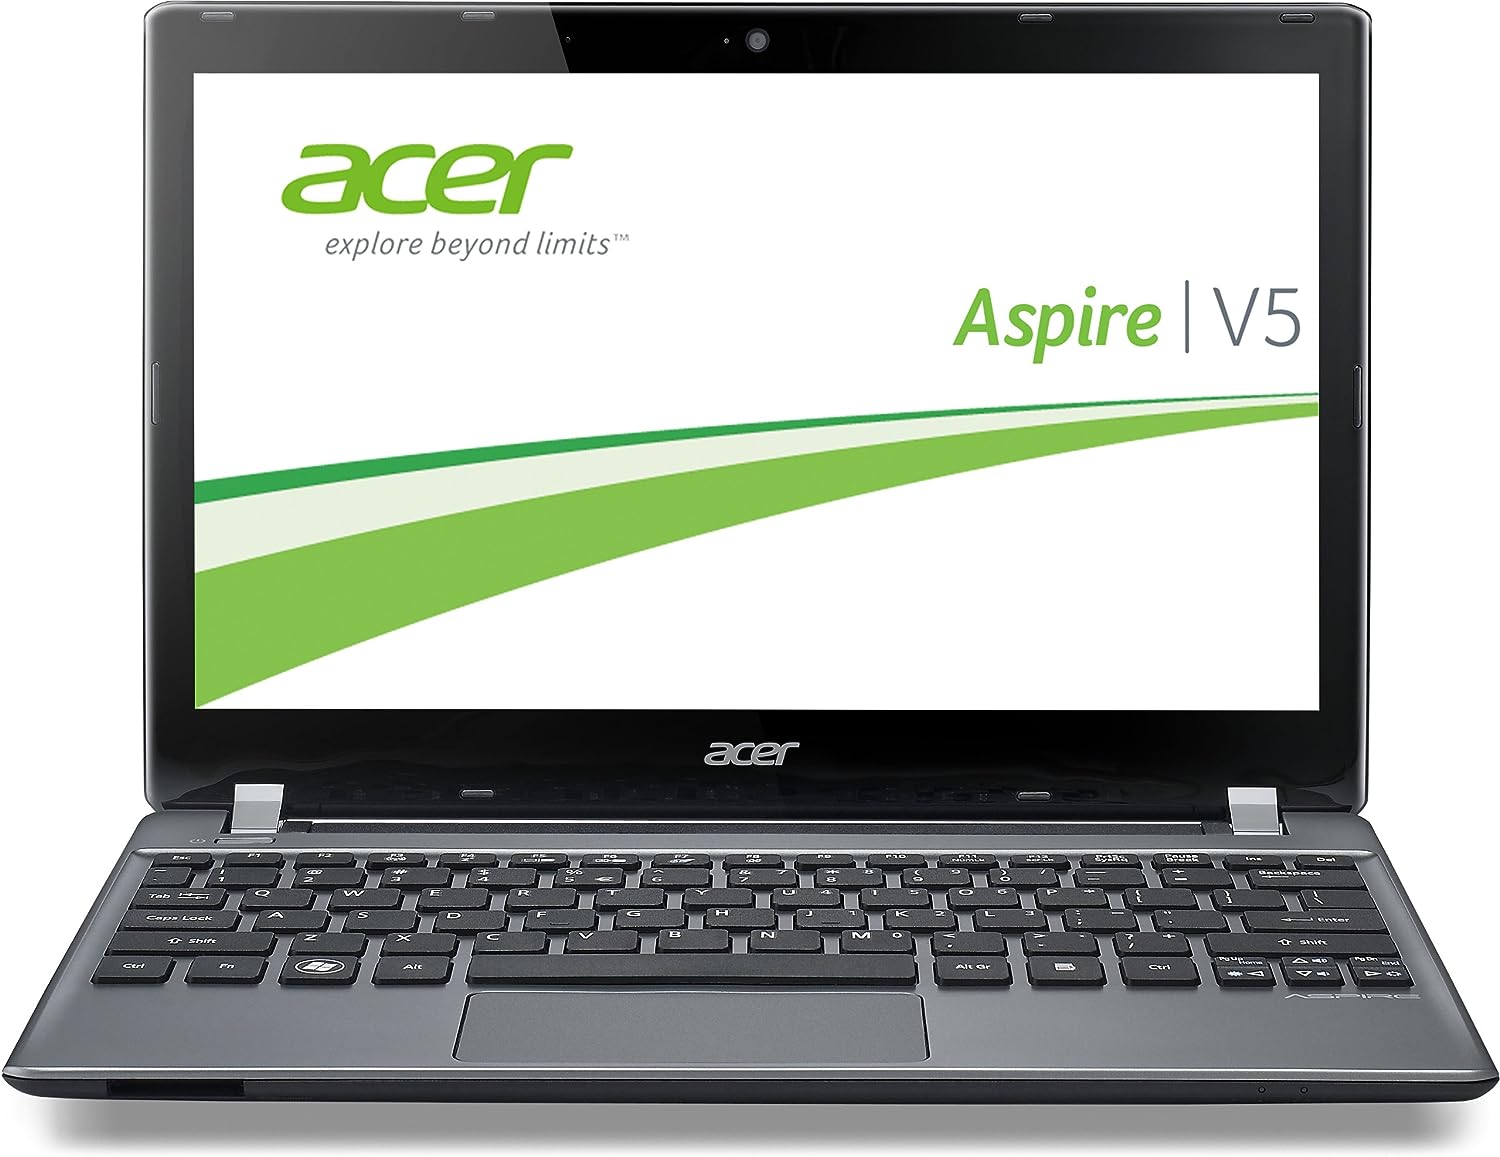 Acer Aspire V5-531G Notebook